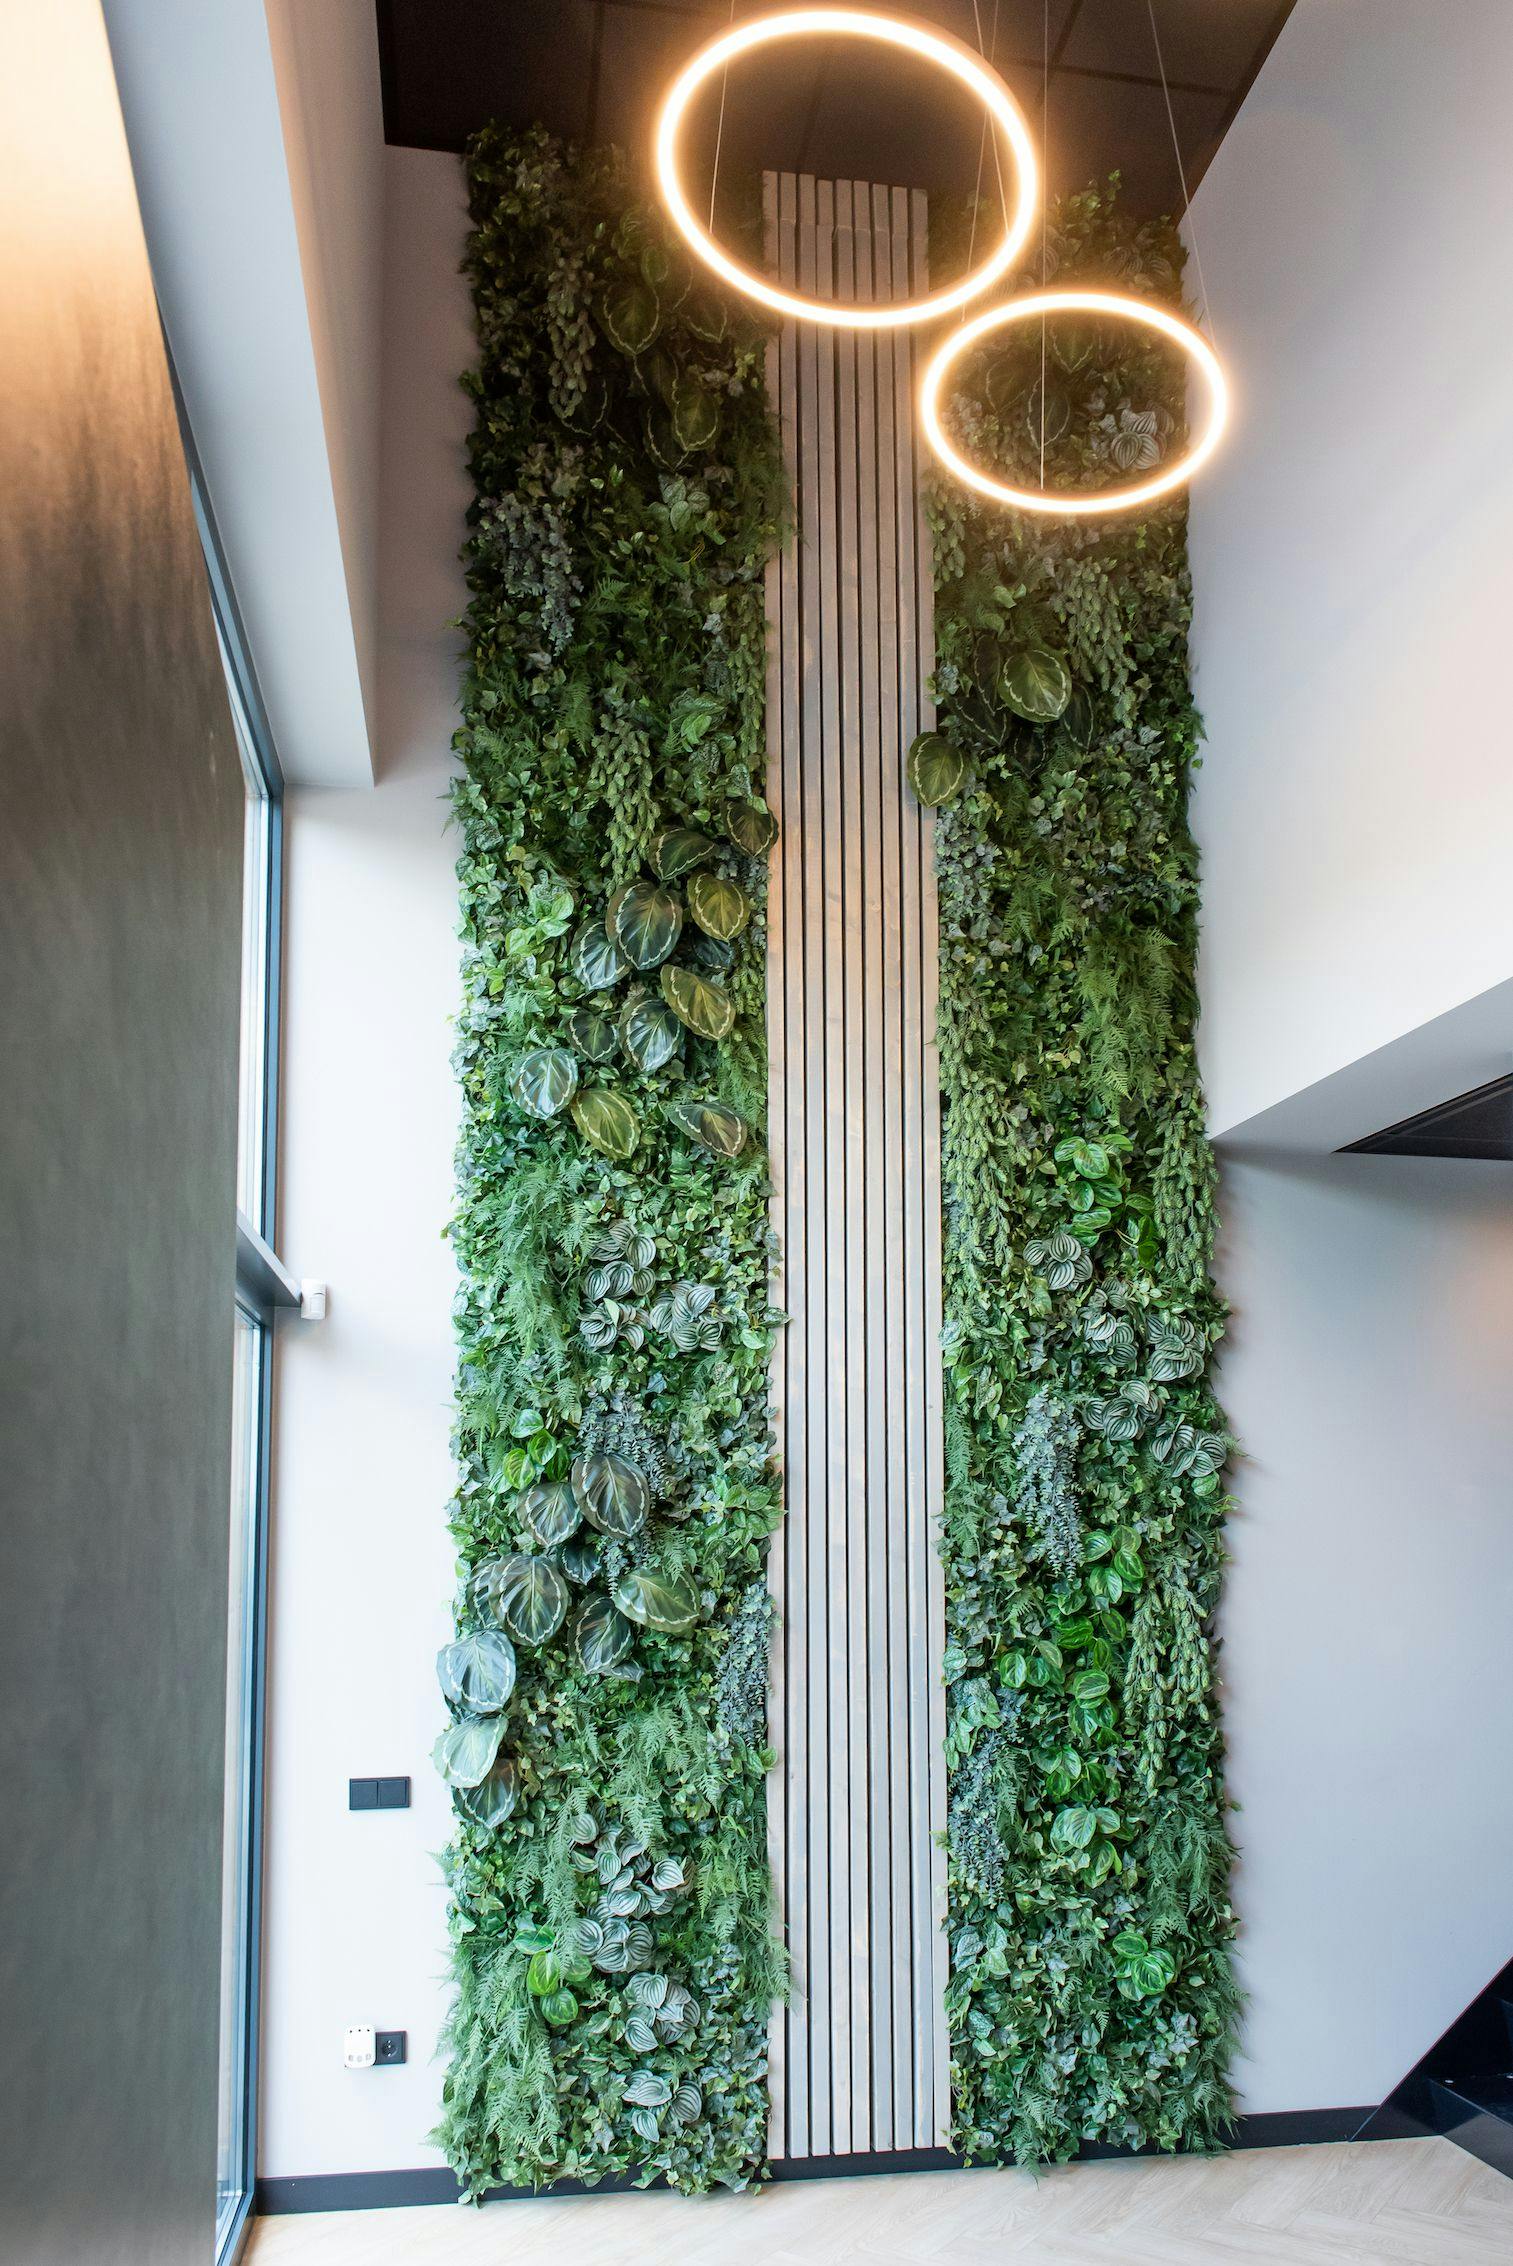 Entree van een kantoorpand, de hoge wand is bekleed met planten en in het midden met houten latten. Aan het plafond hangen twee cirkellampen.